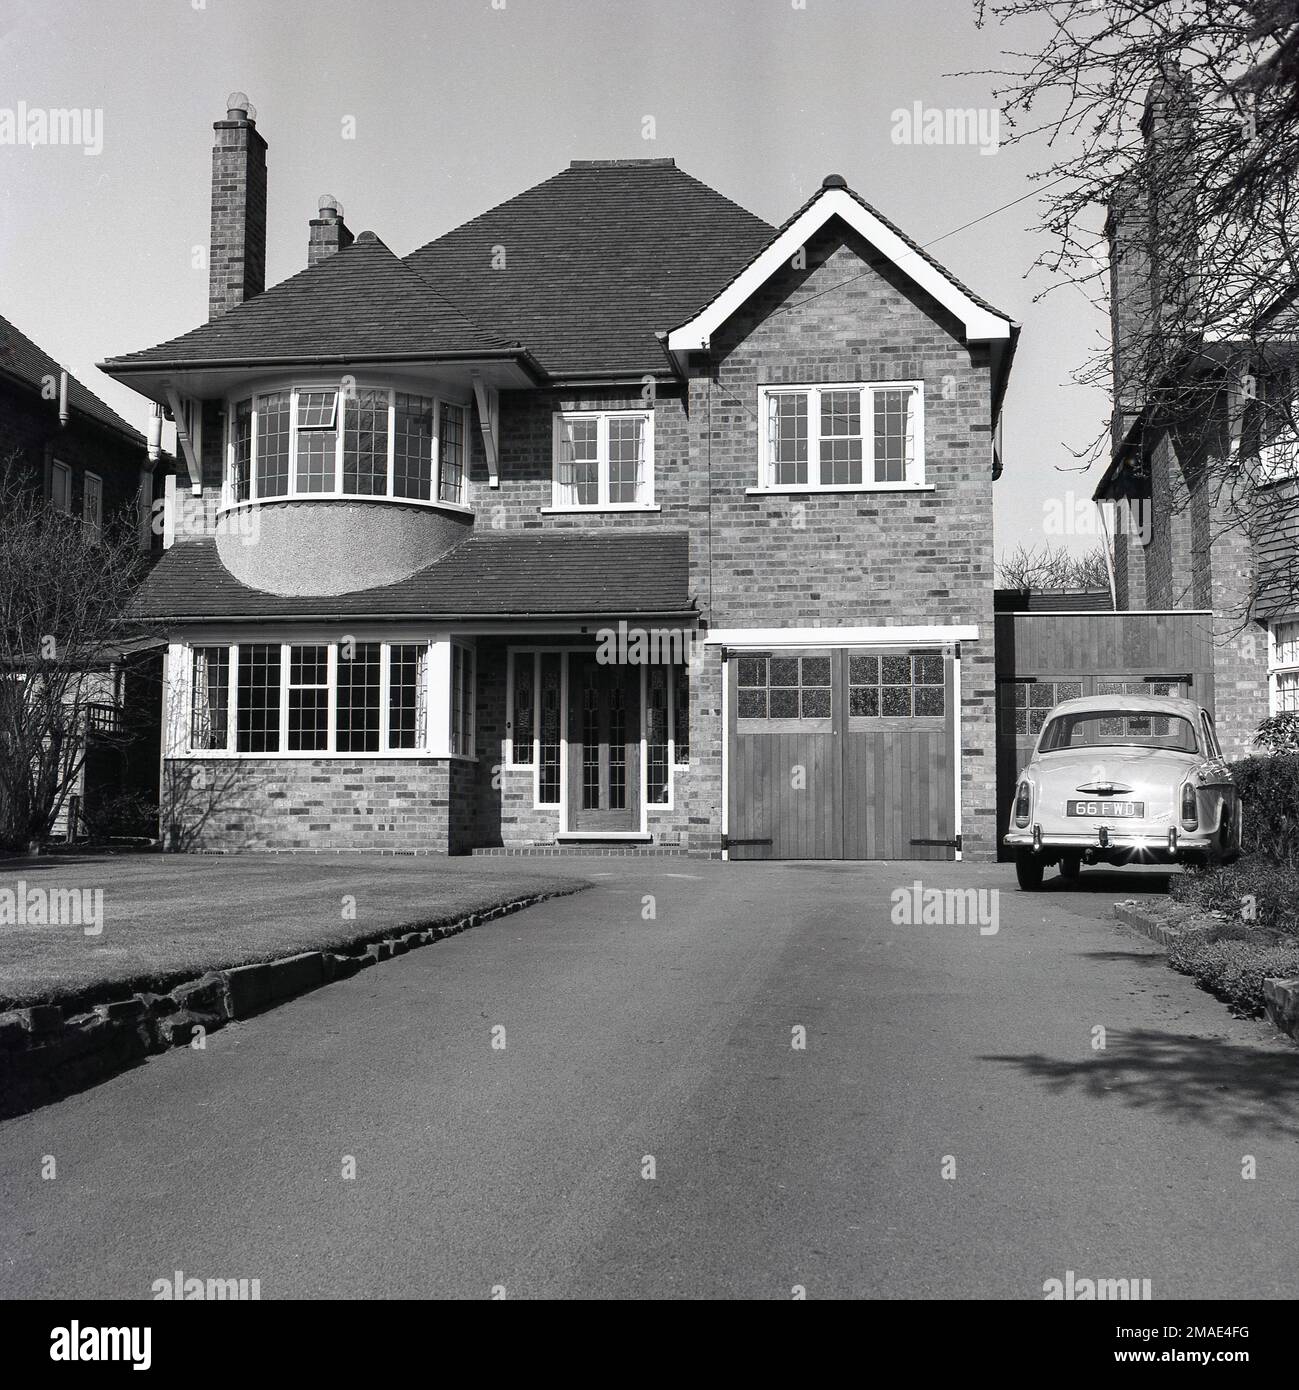 1960s, storico, vista frontale esterna di una grande casa suburbana, con garage interno, con porte in legno, Inghilterra, Regno Unito. Una macchina Woseley dell'epoca è parcheggiata nel vialetto di fronte al secondo garage costruito sul lato della casa e che è attaccato alla proprietà vicina. Foto Stock